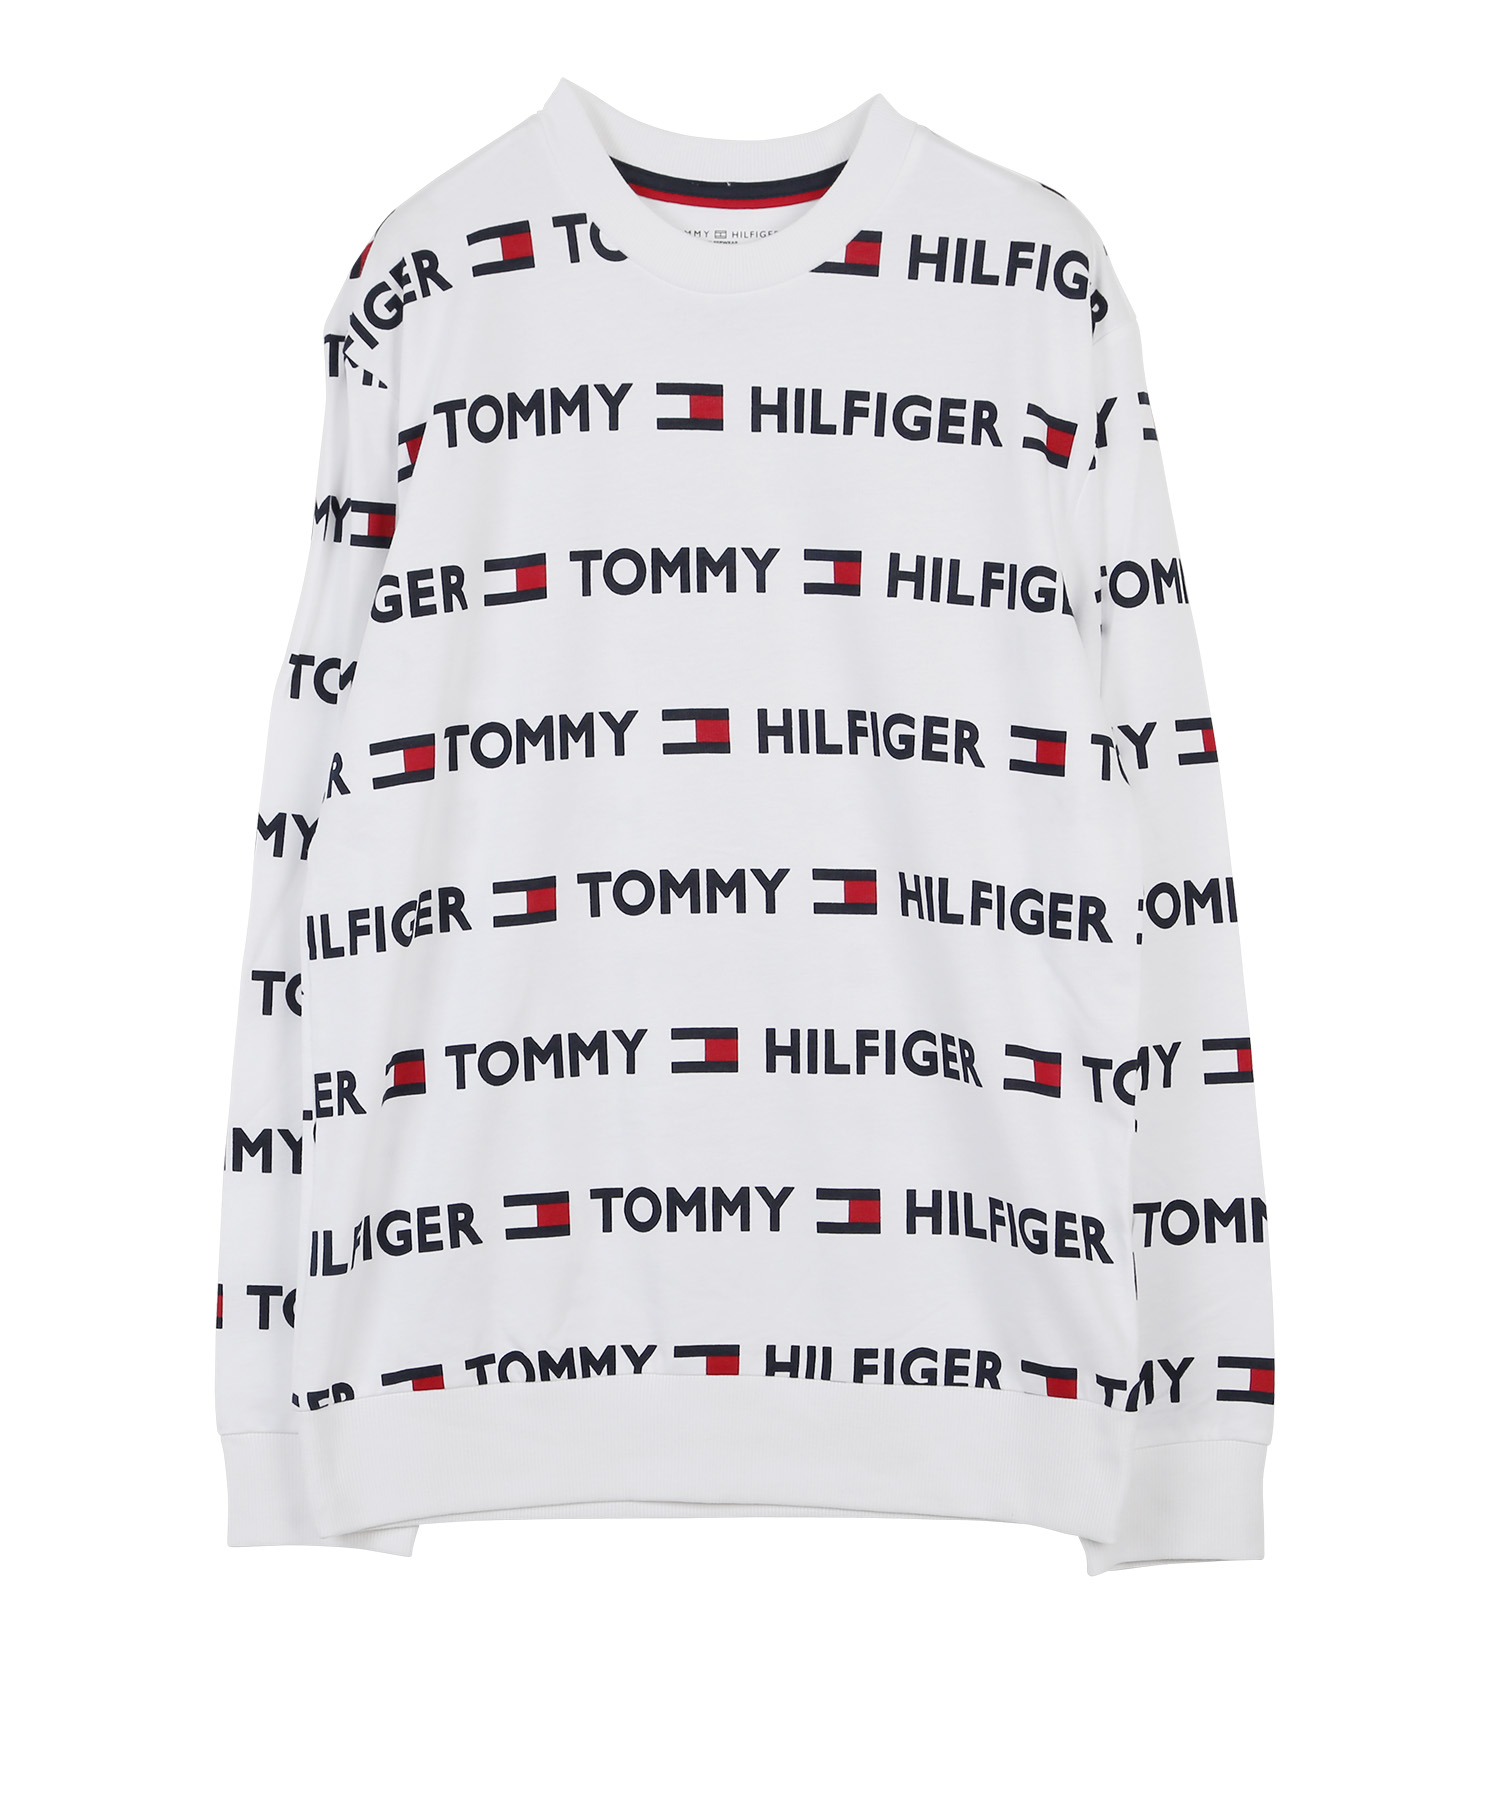 トミー ヒルフィガー TOMMY HILFIGER スウェット メンズ プルオーバー コットン100% 綿 ユニセックス ルームウェア ブランド ロゴ  プレゼント ギフト